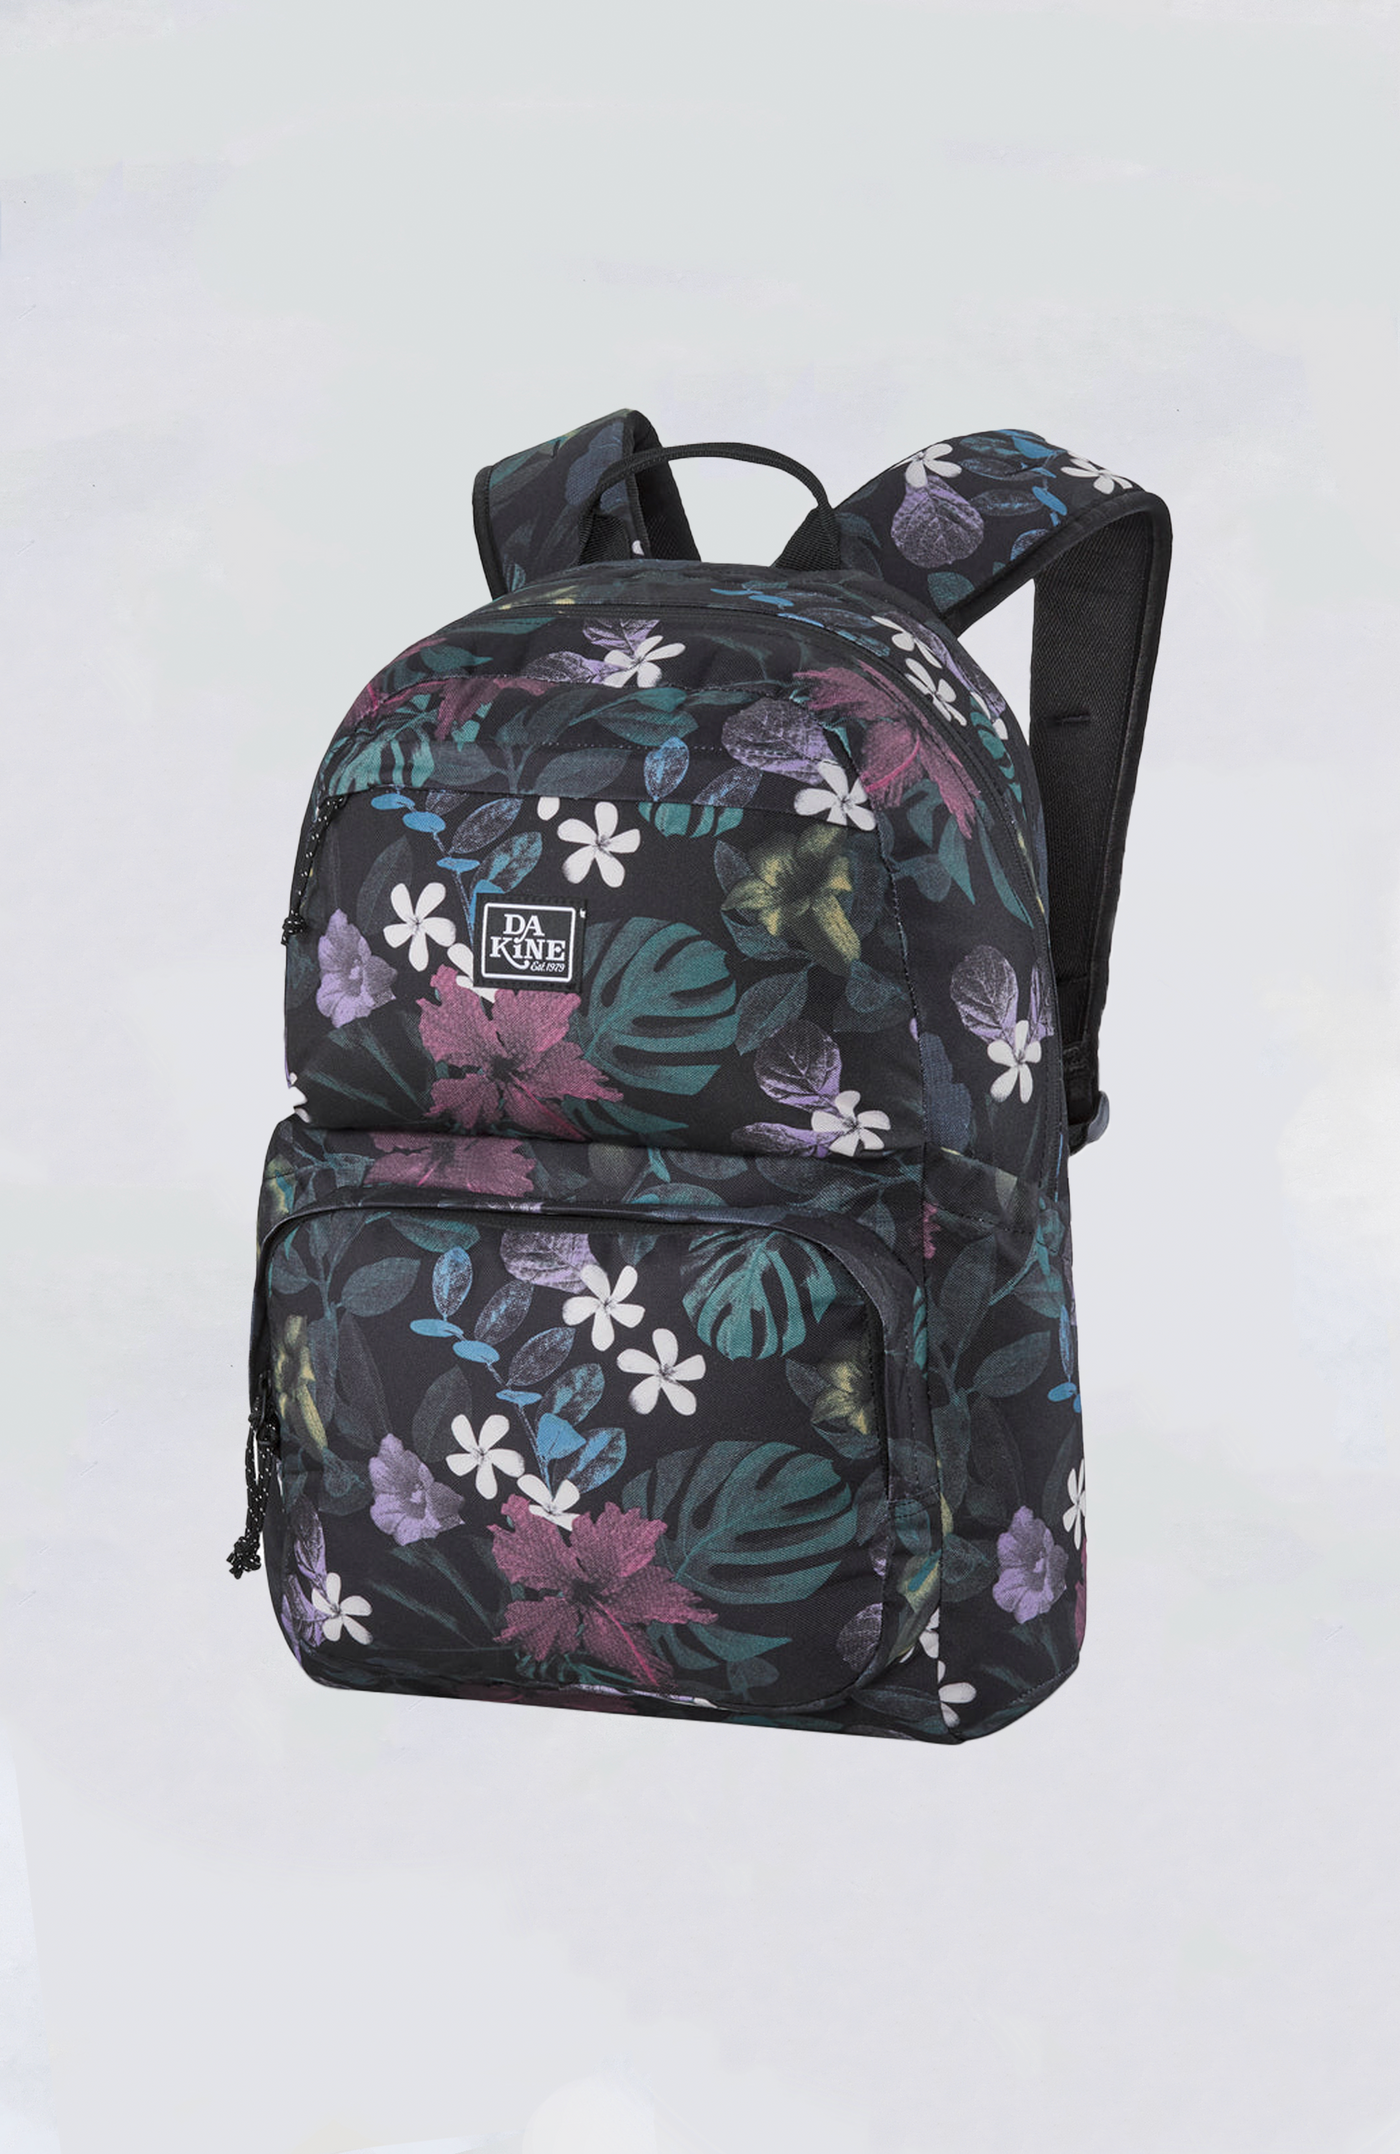 Dakine Bag - Method Backpack 25L